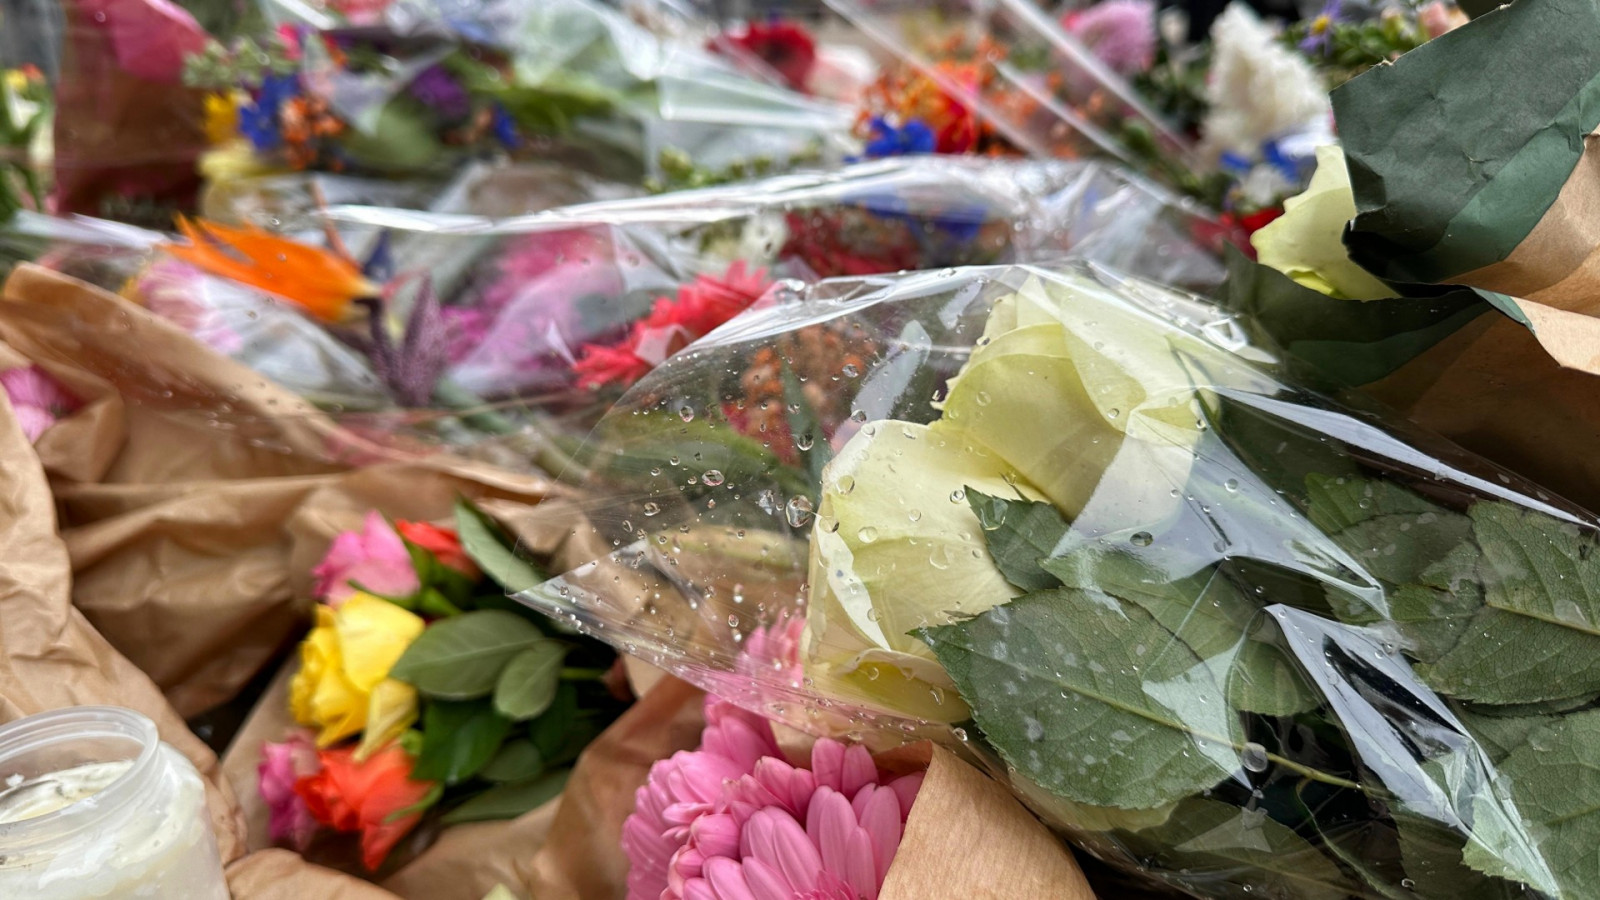 Bloemen voor overleden meisje (16) op Geldersekade